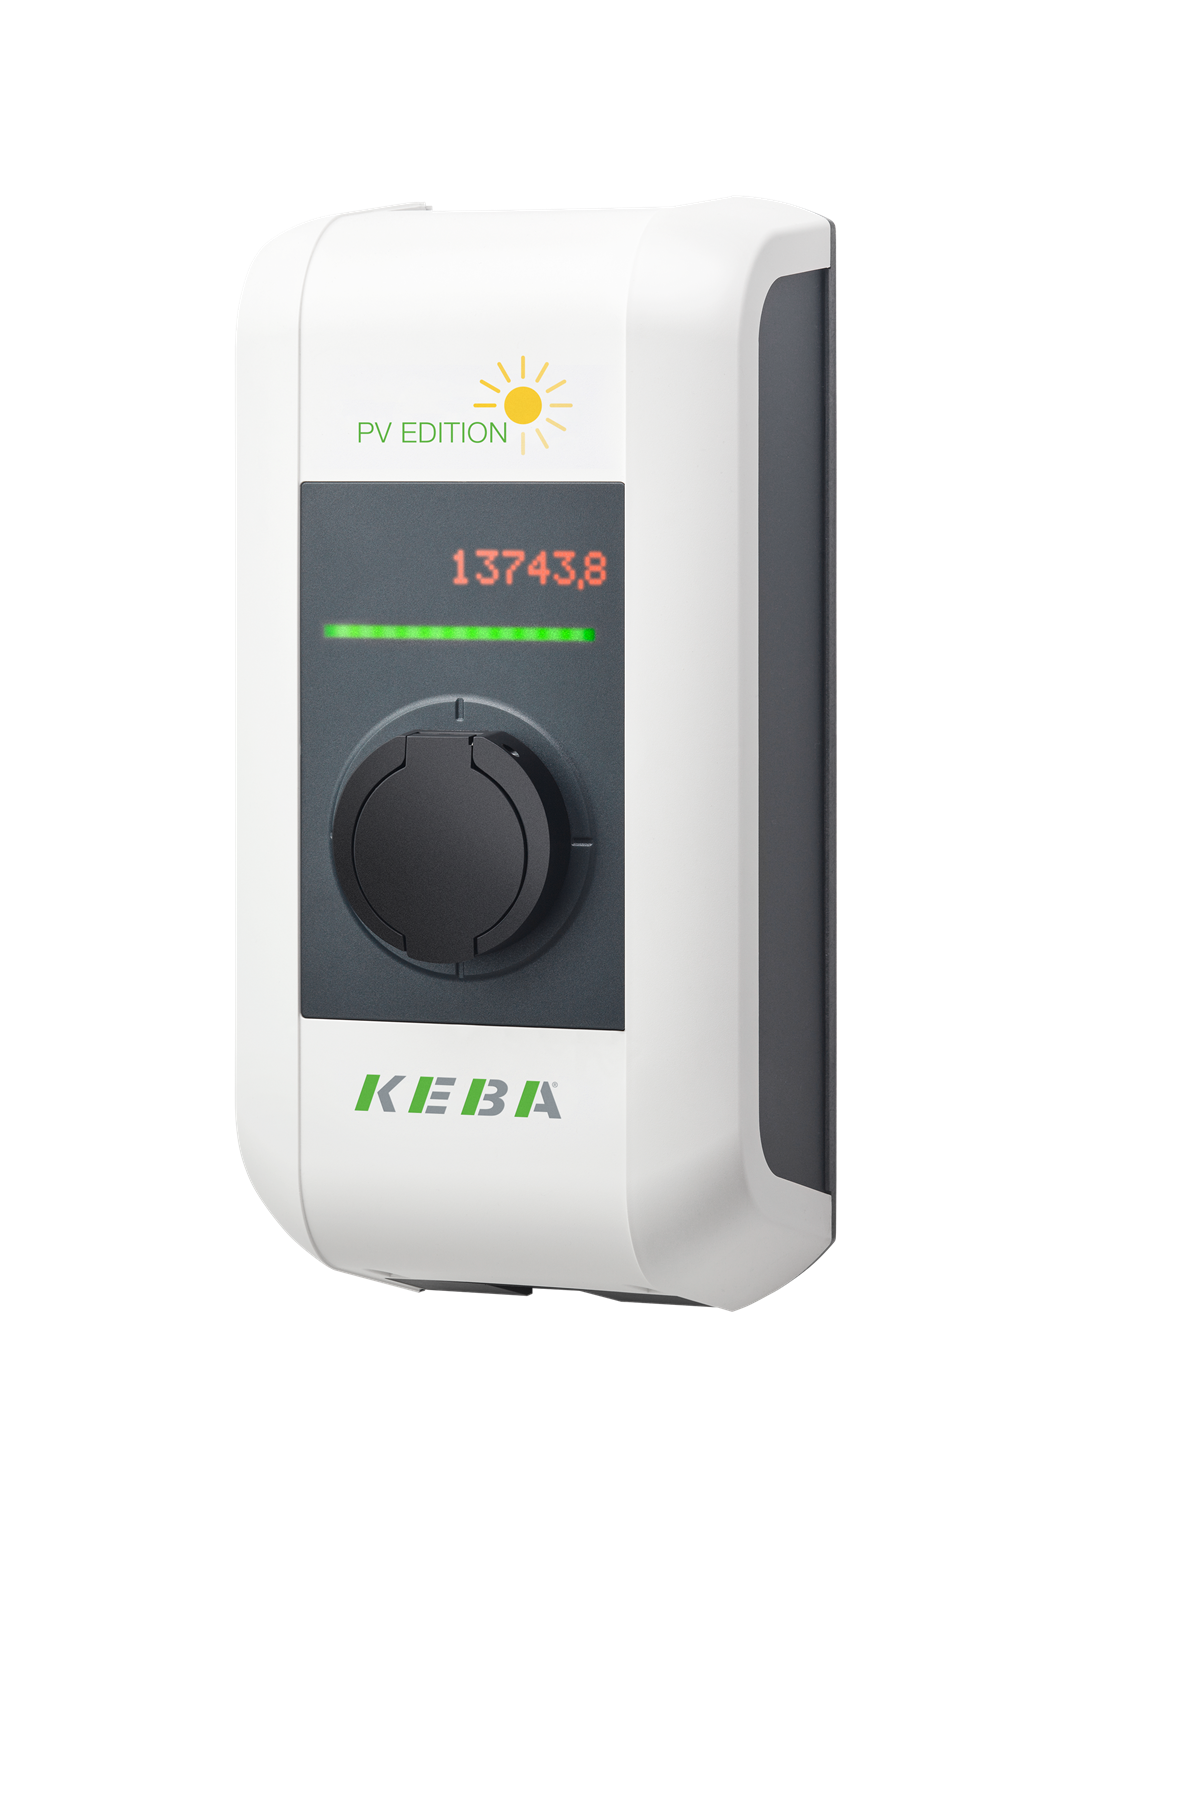 Die neue Wallbox von KEBA nutzt PV-Überschussstrom zum Laden von E-Autos